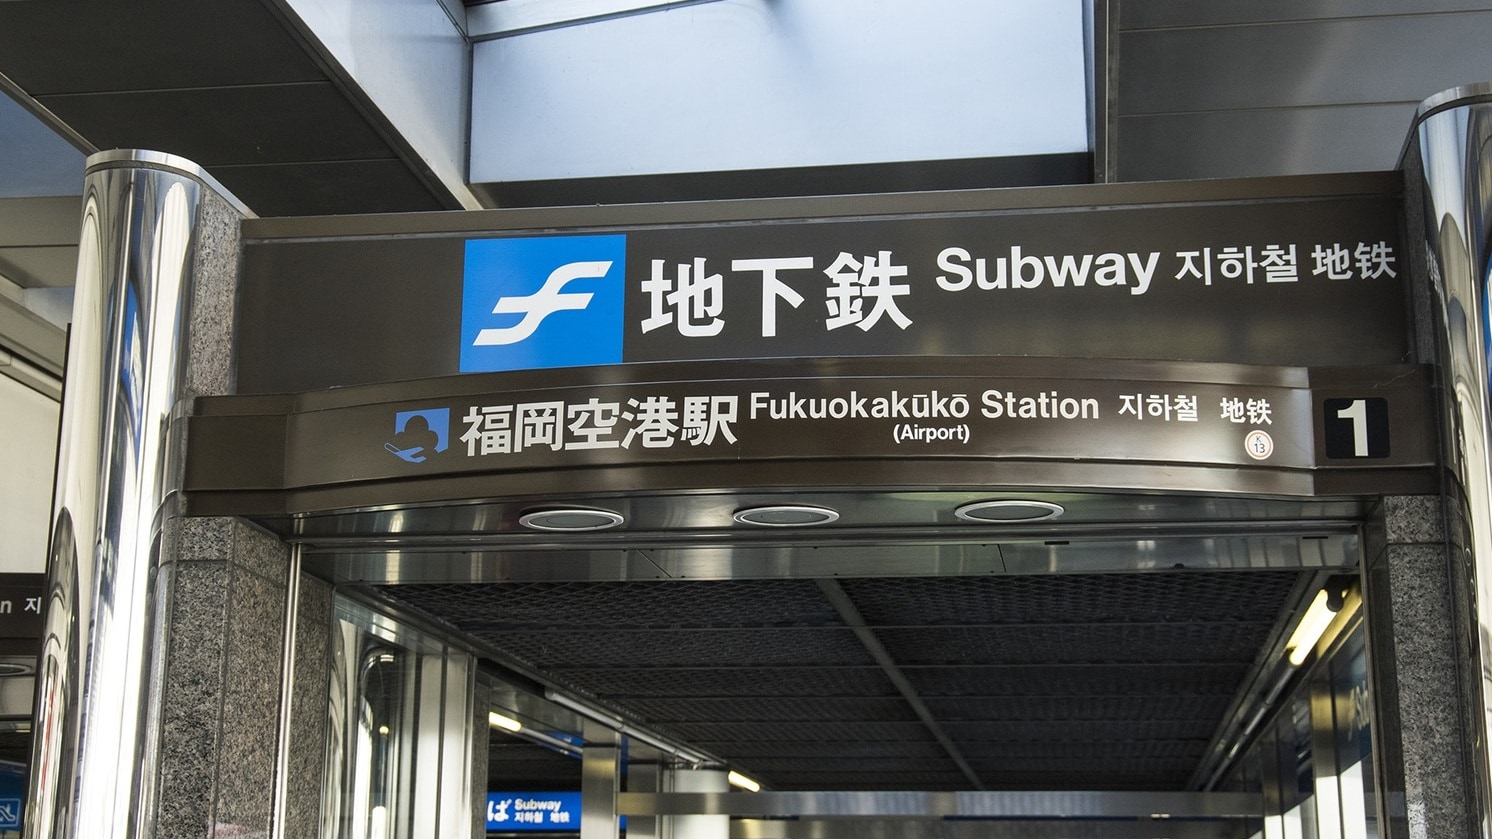 สนามบินฟุกุโอกะ / ทางเข้ารถไฟใต้ดิน